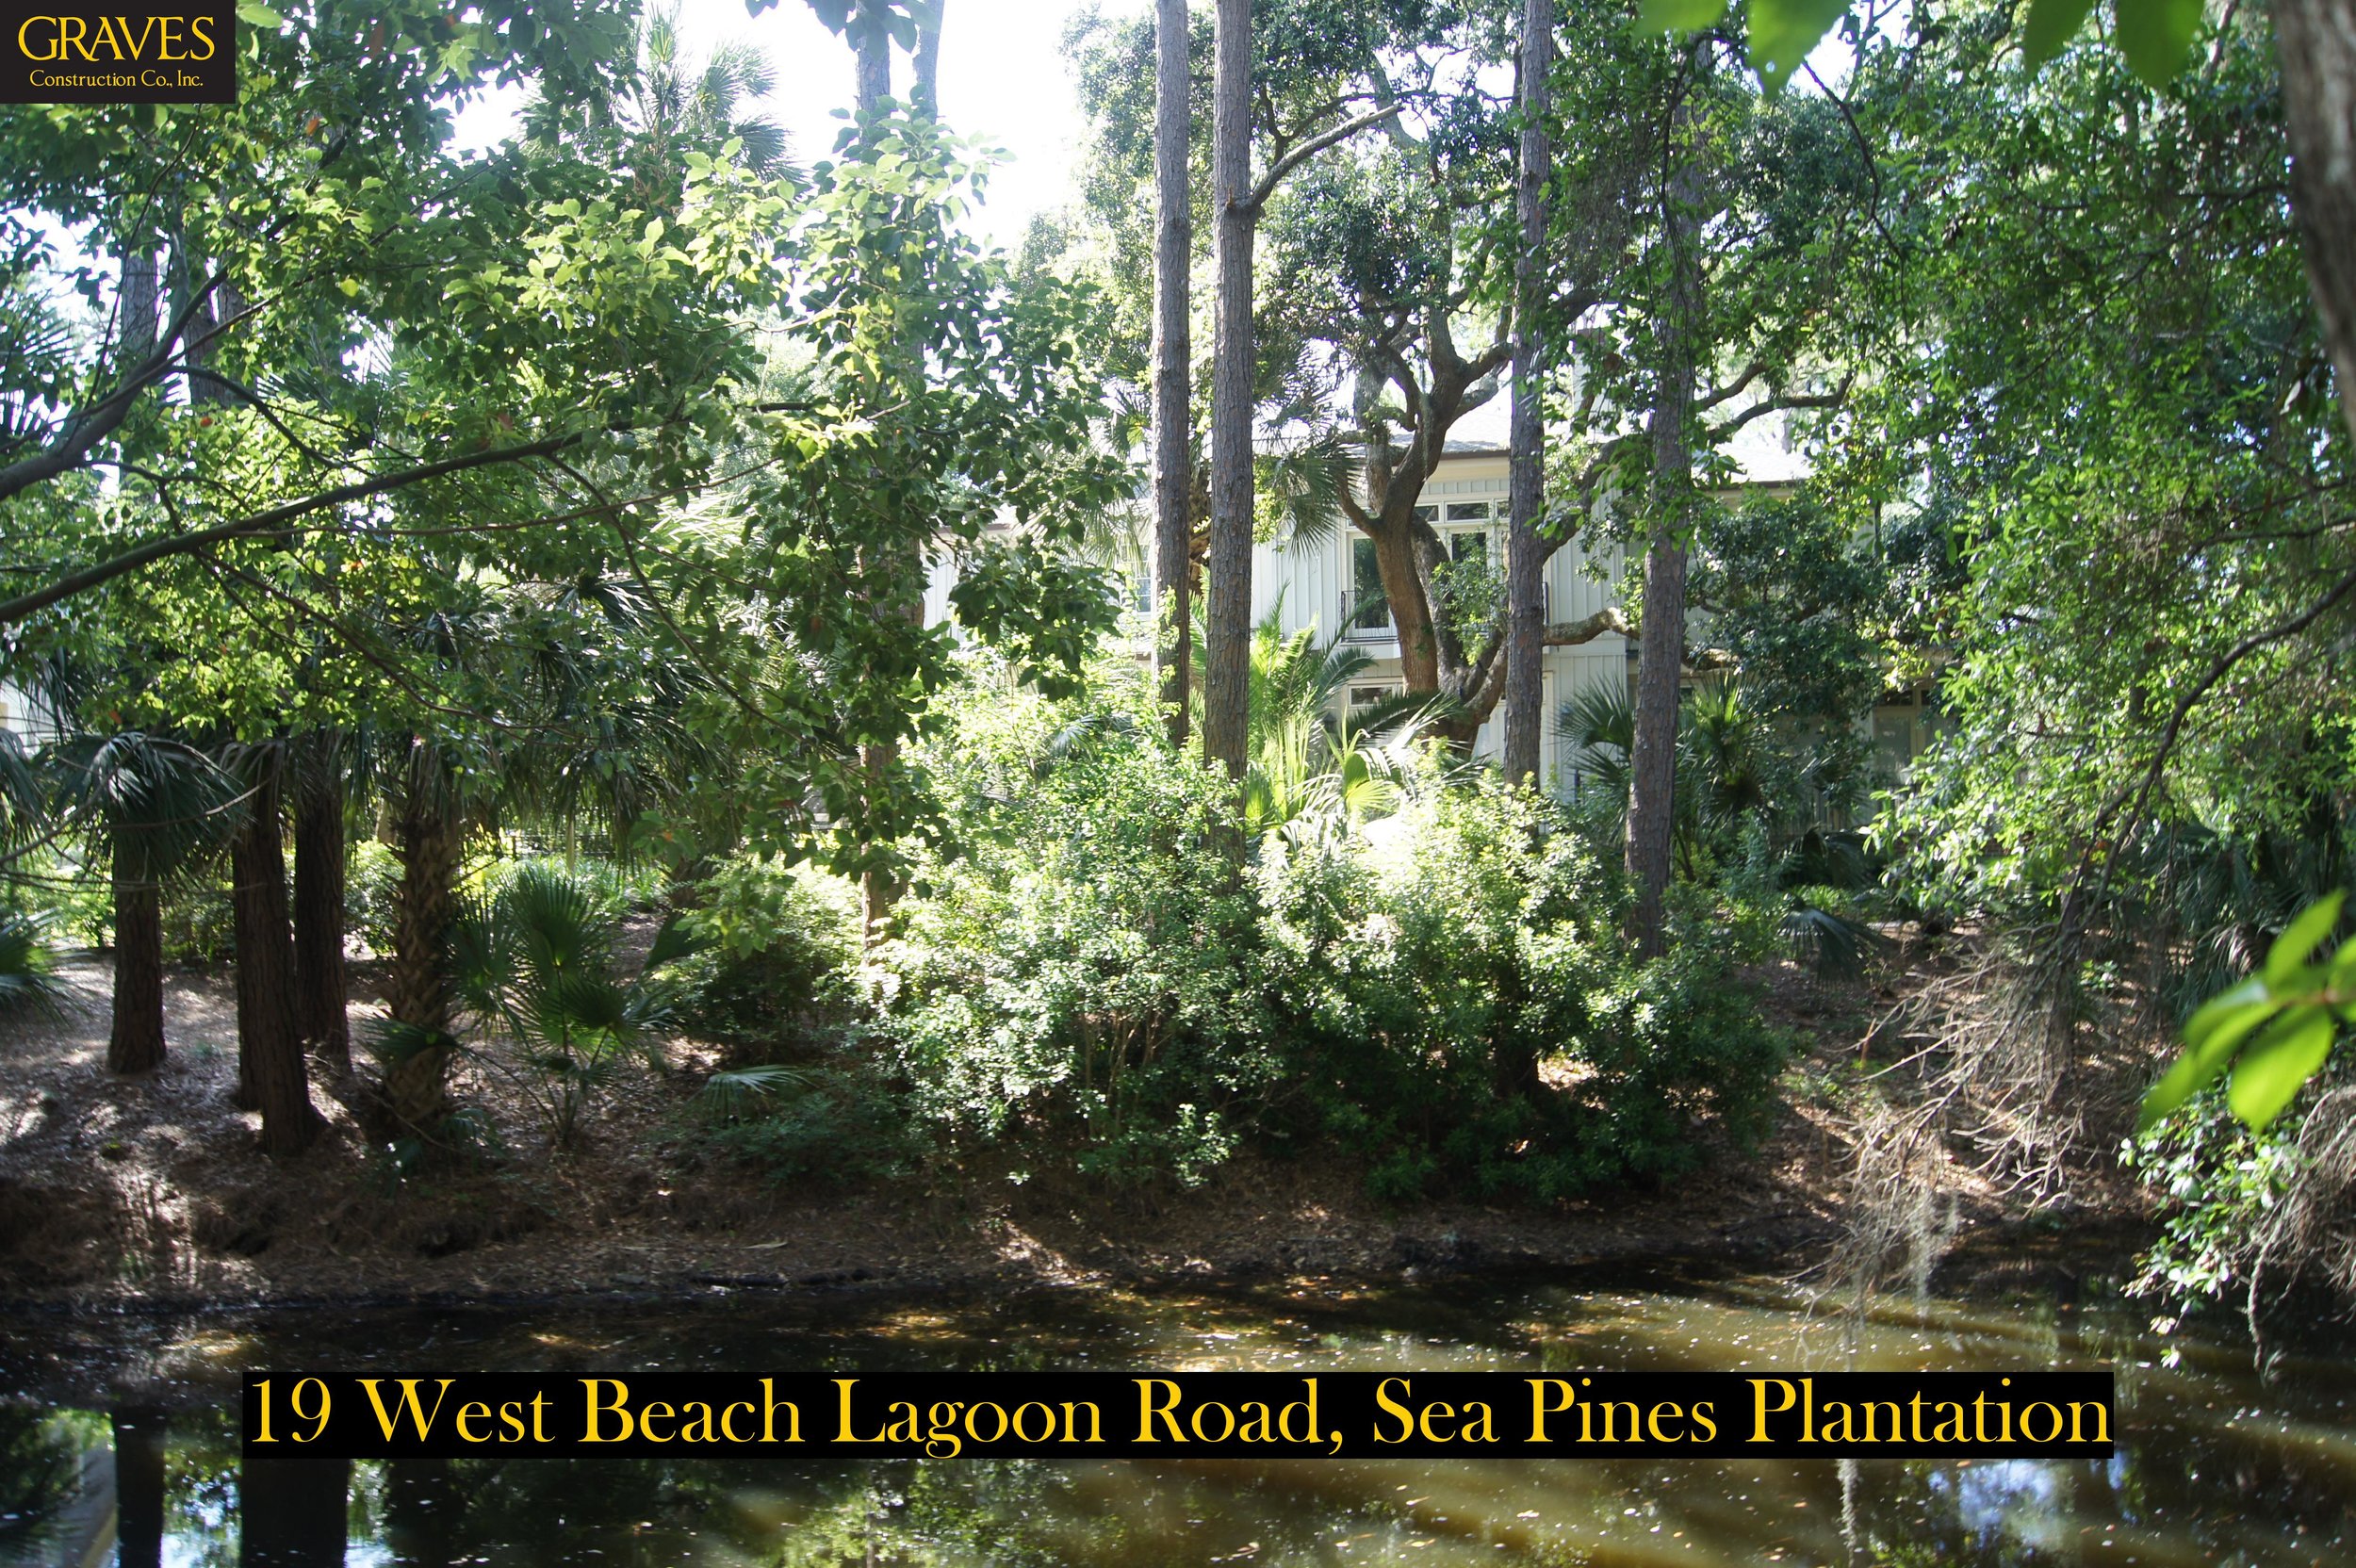 19 West Beach Lagoon Rd - 4